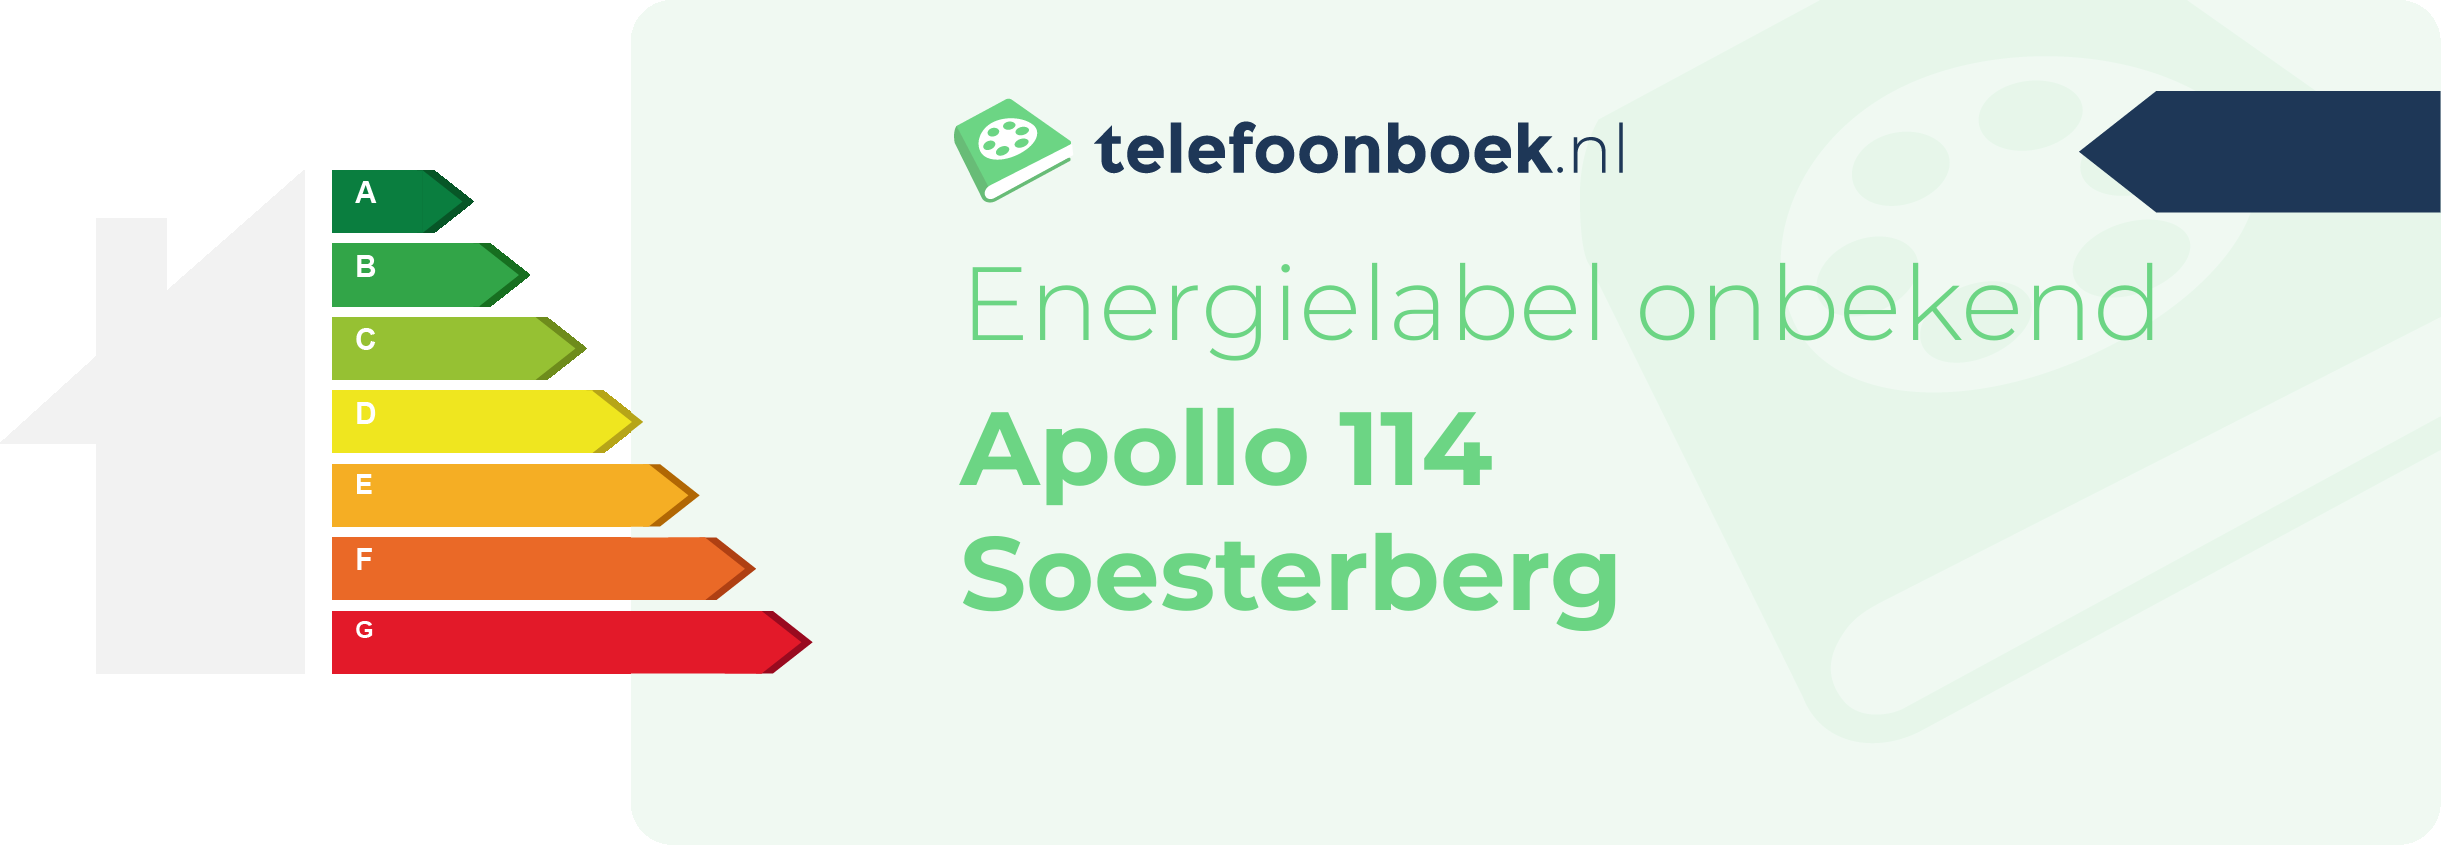 Energielabel Apollo 114 Soesterberg